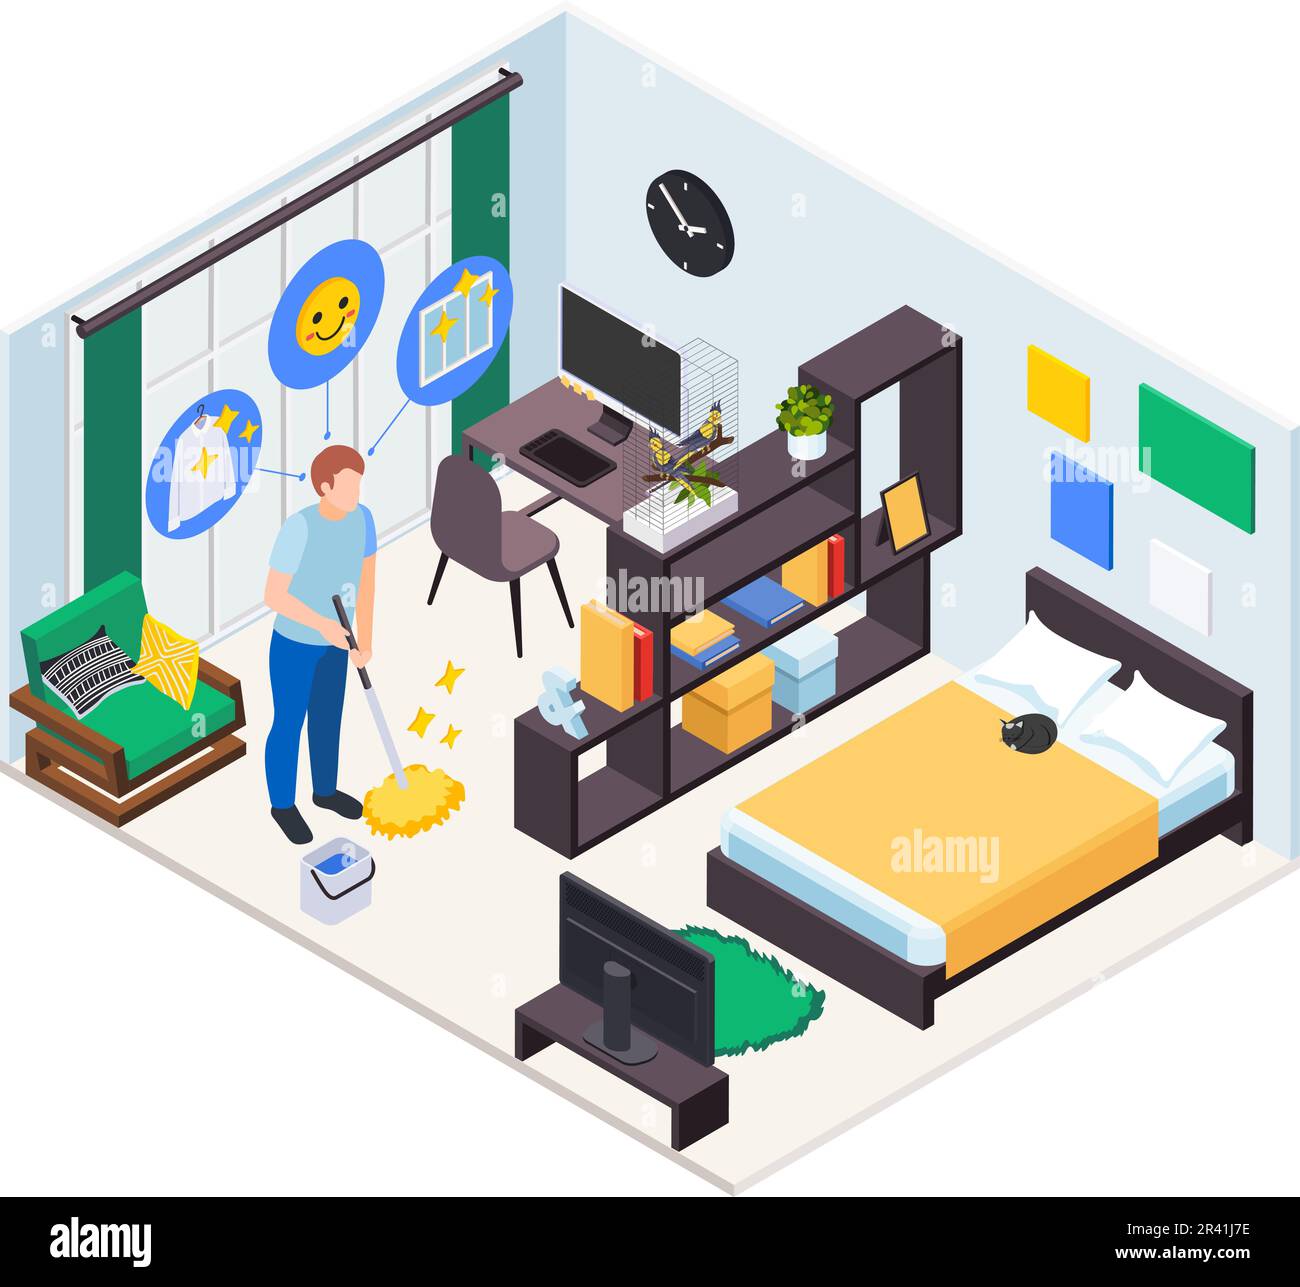 Mental Health Wellness Icons Zusammensetzung mit isolierter Sicht auf das Innere des Hauses und Mann reinigende Raum Vektordarstellung Stock Vektor